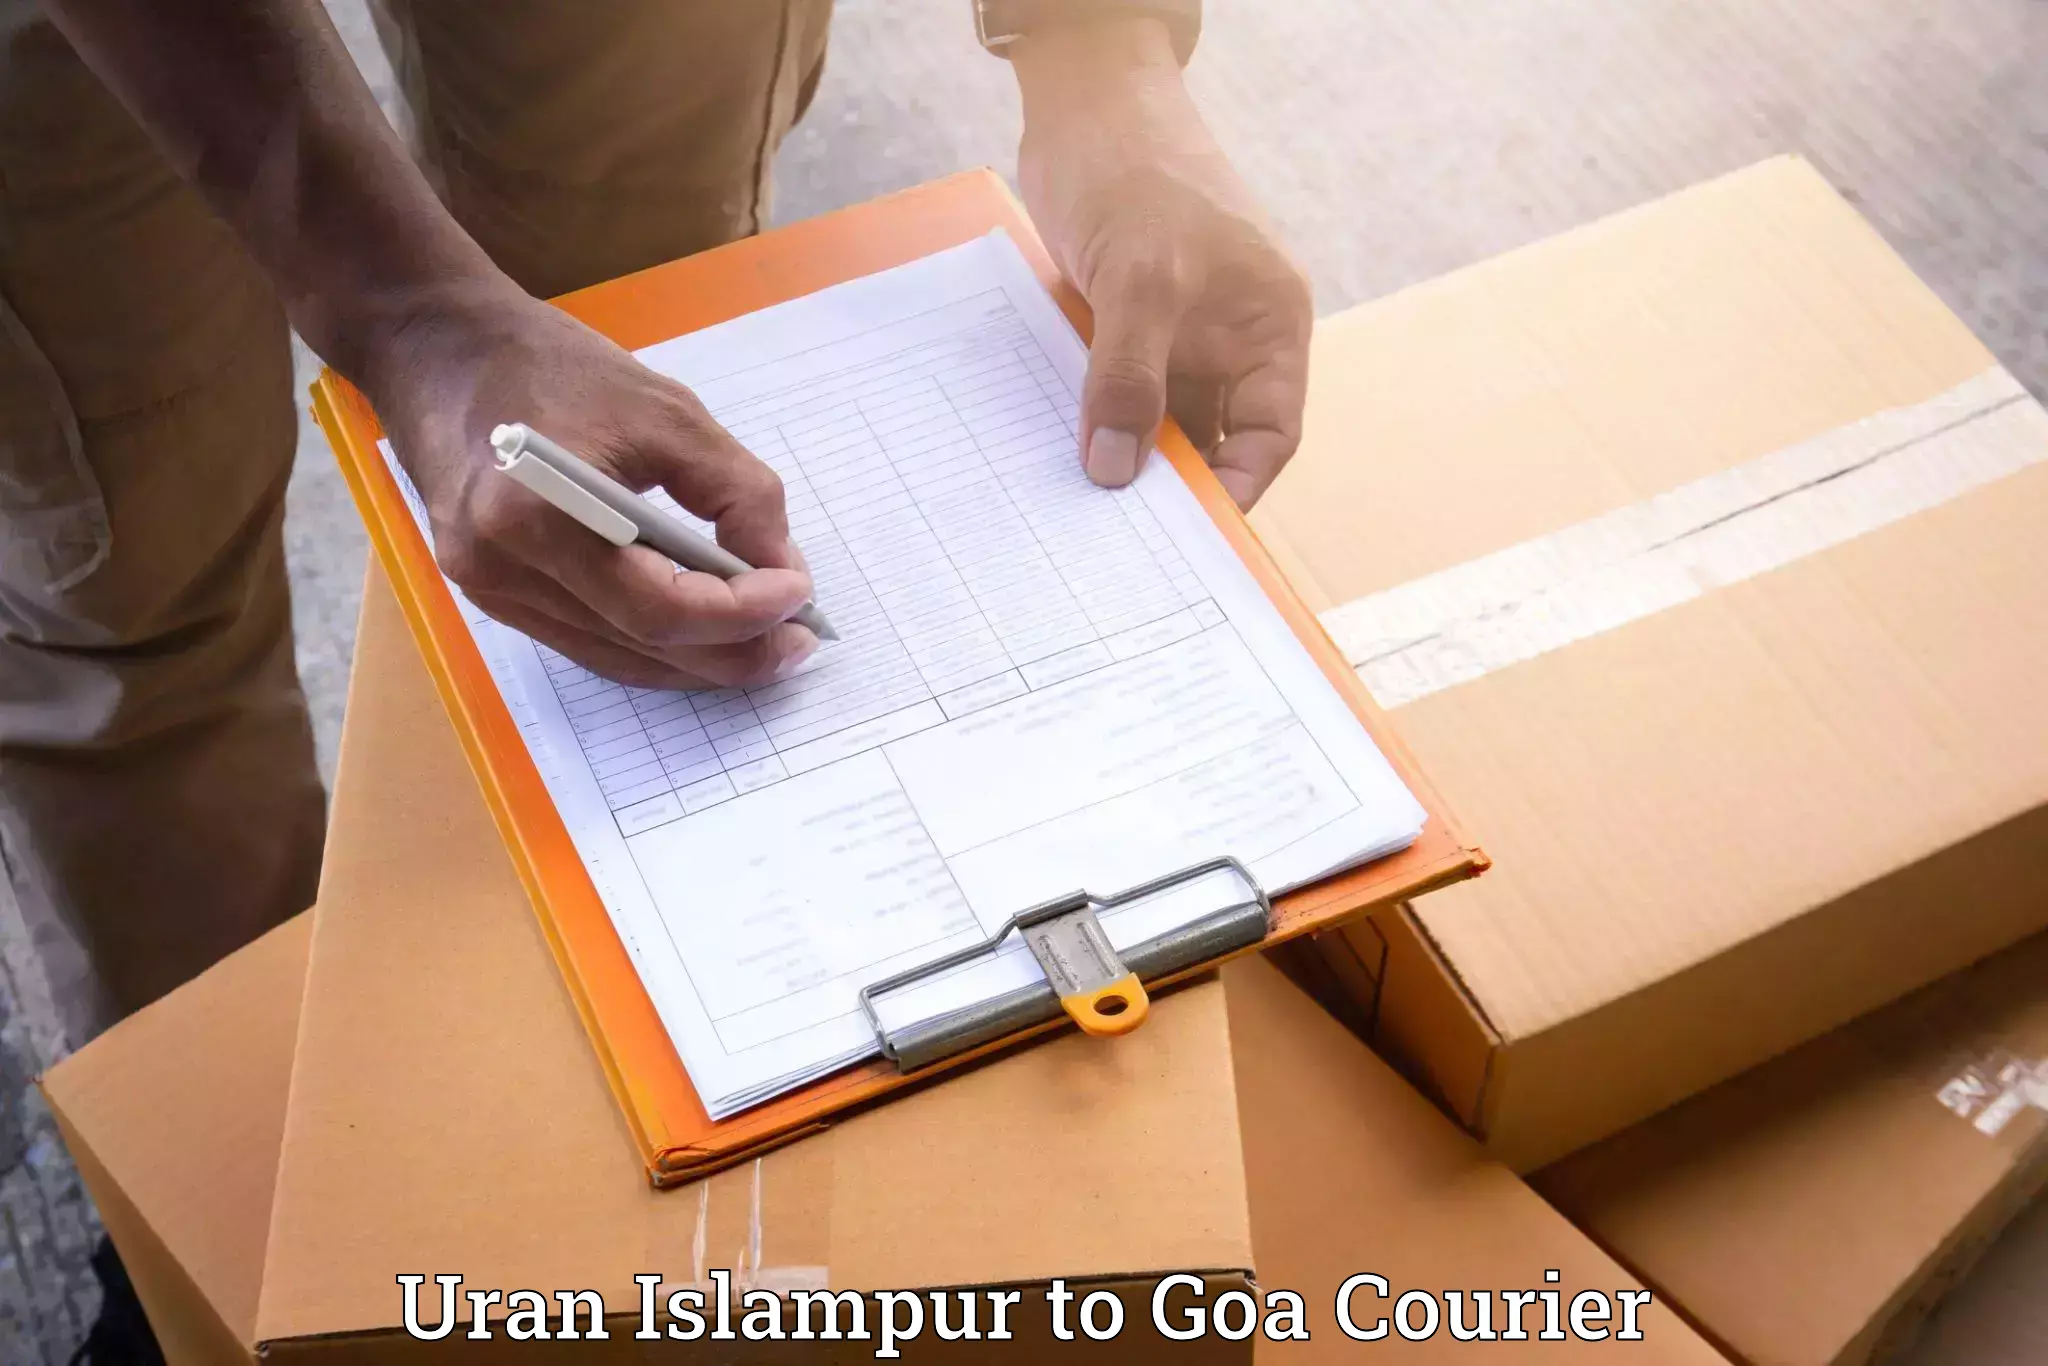 Dependable furniture transport Uran Islampur to IIT Goa